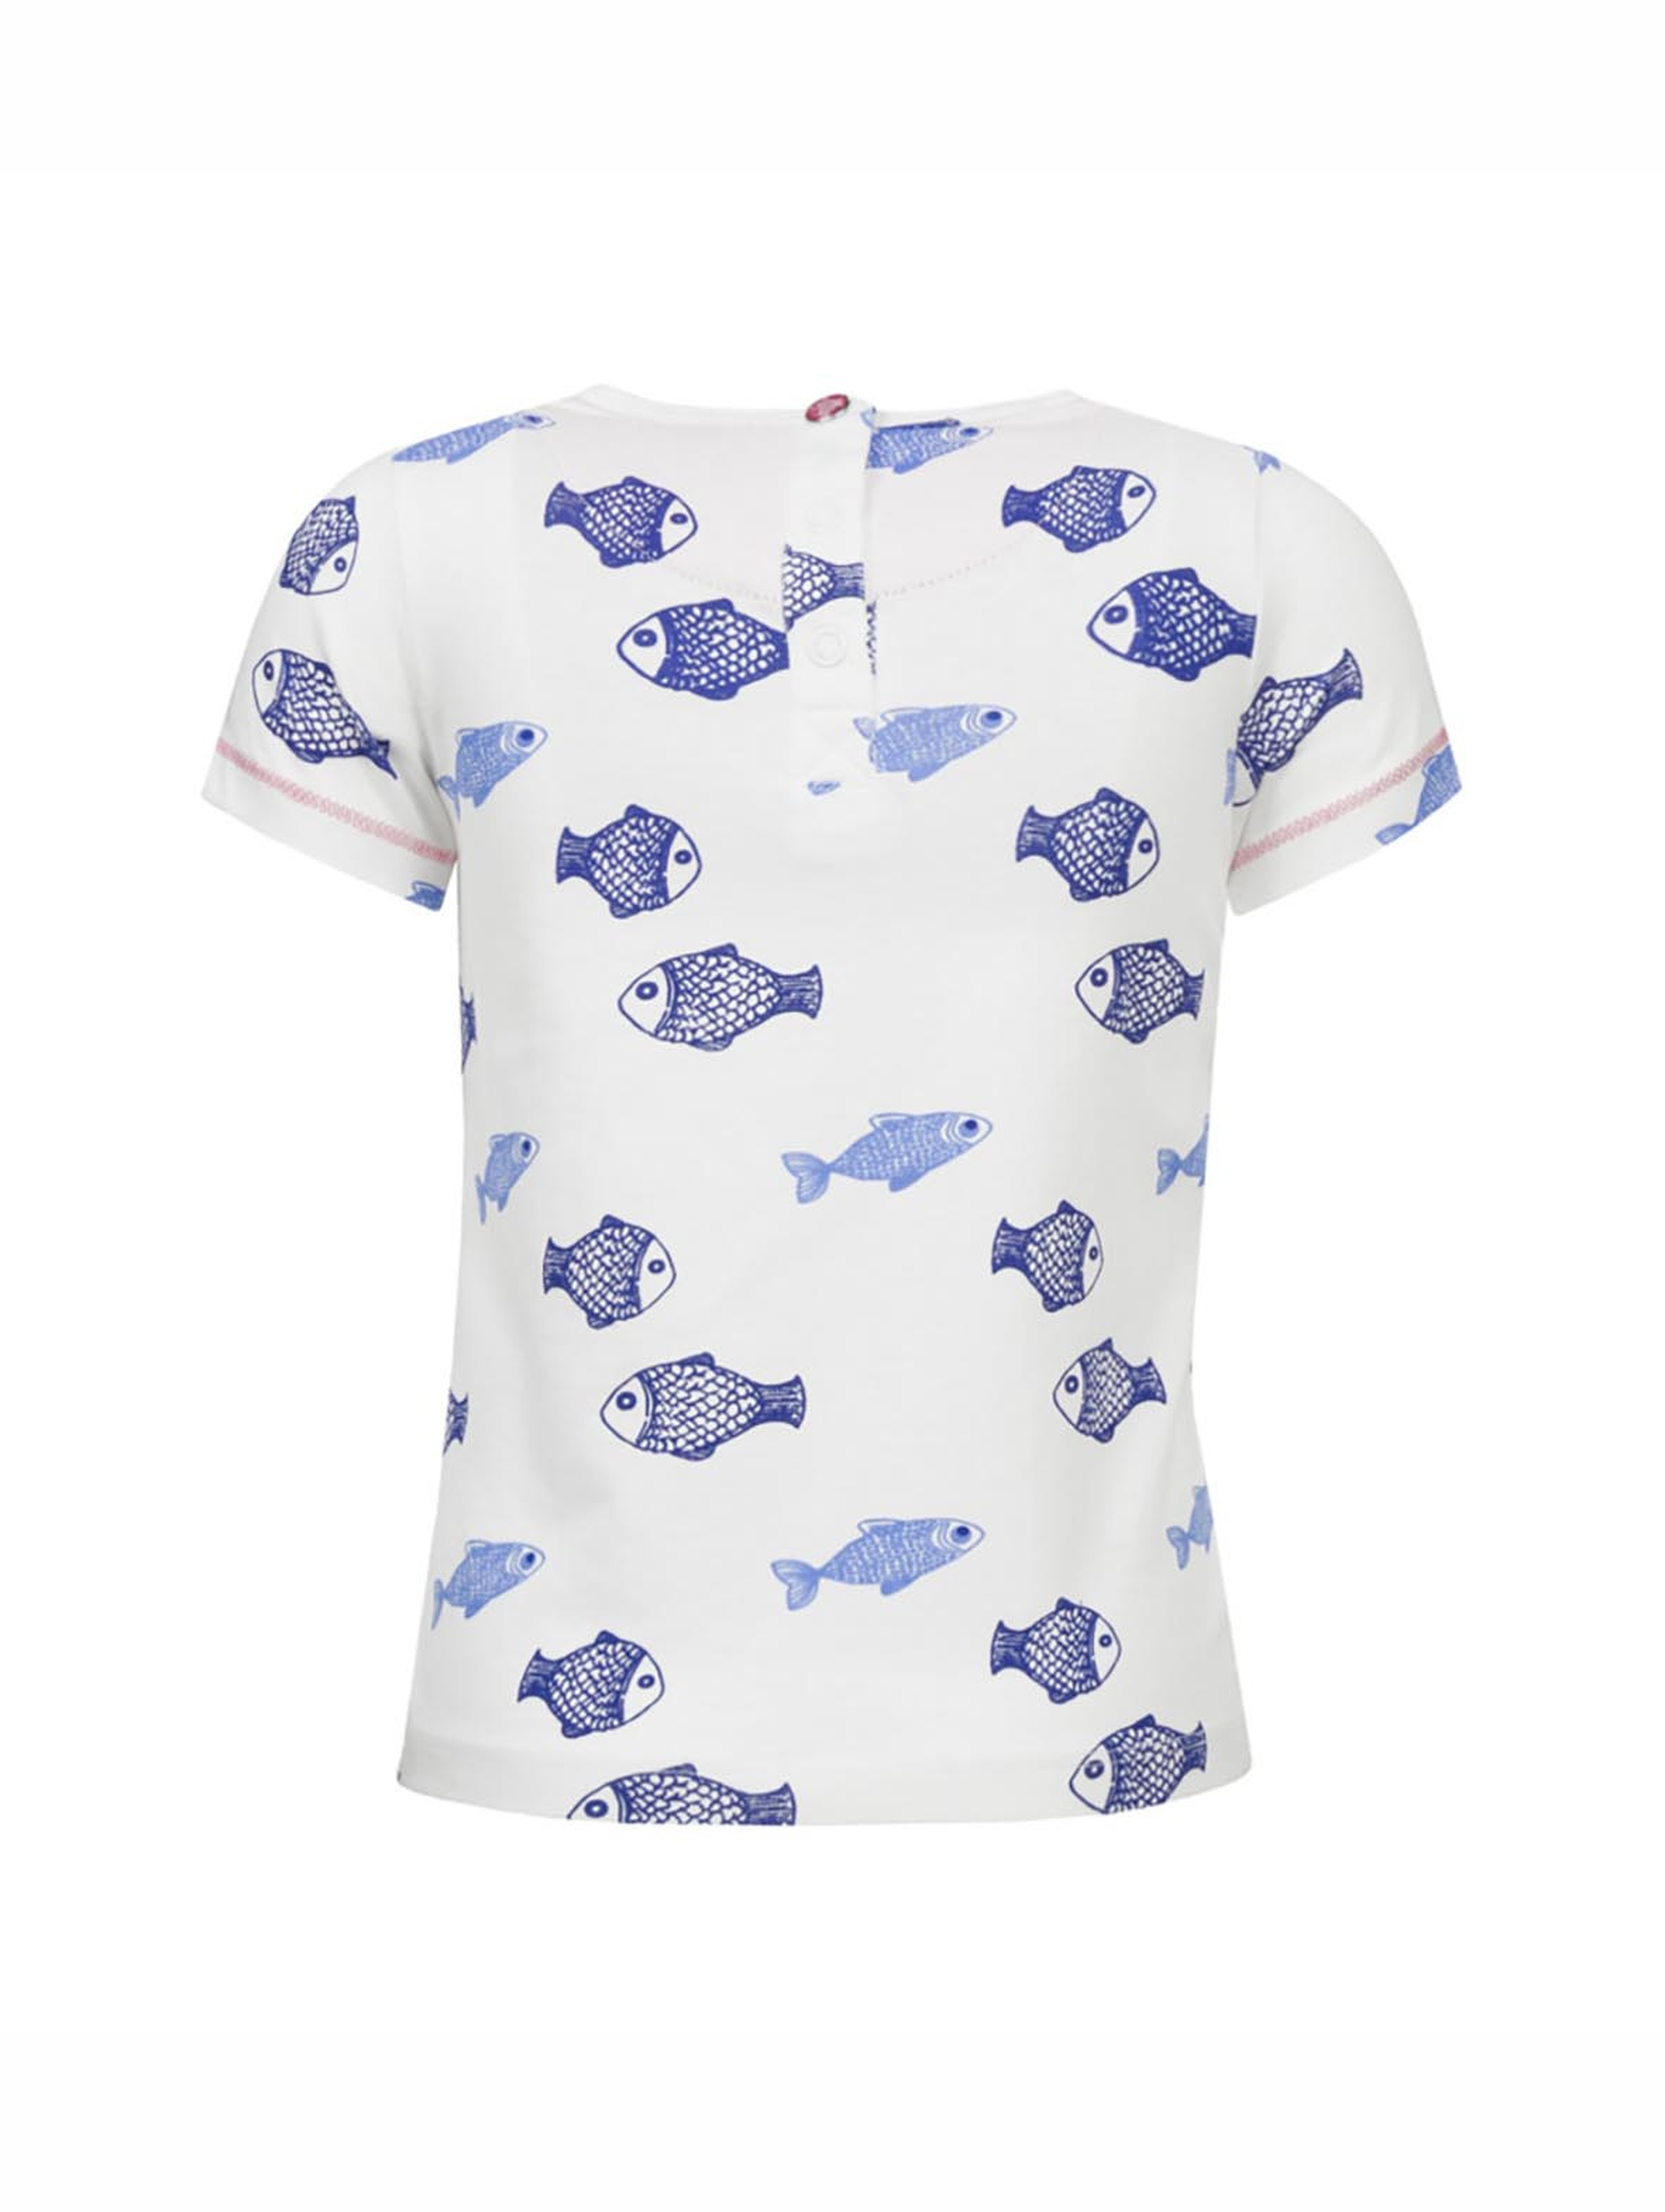 T-shirt dziewczęcy, biały, rybki, Lief